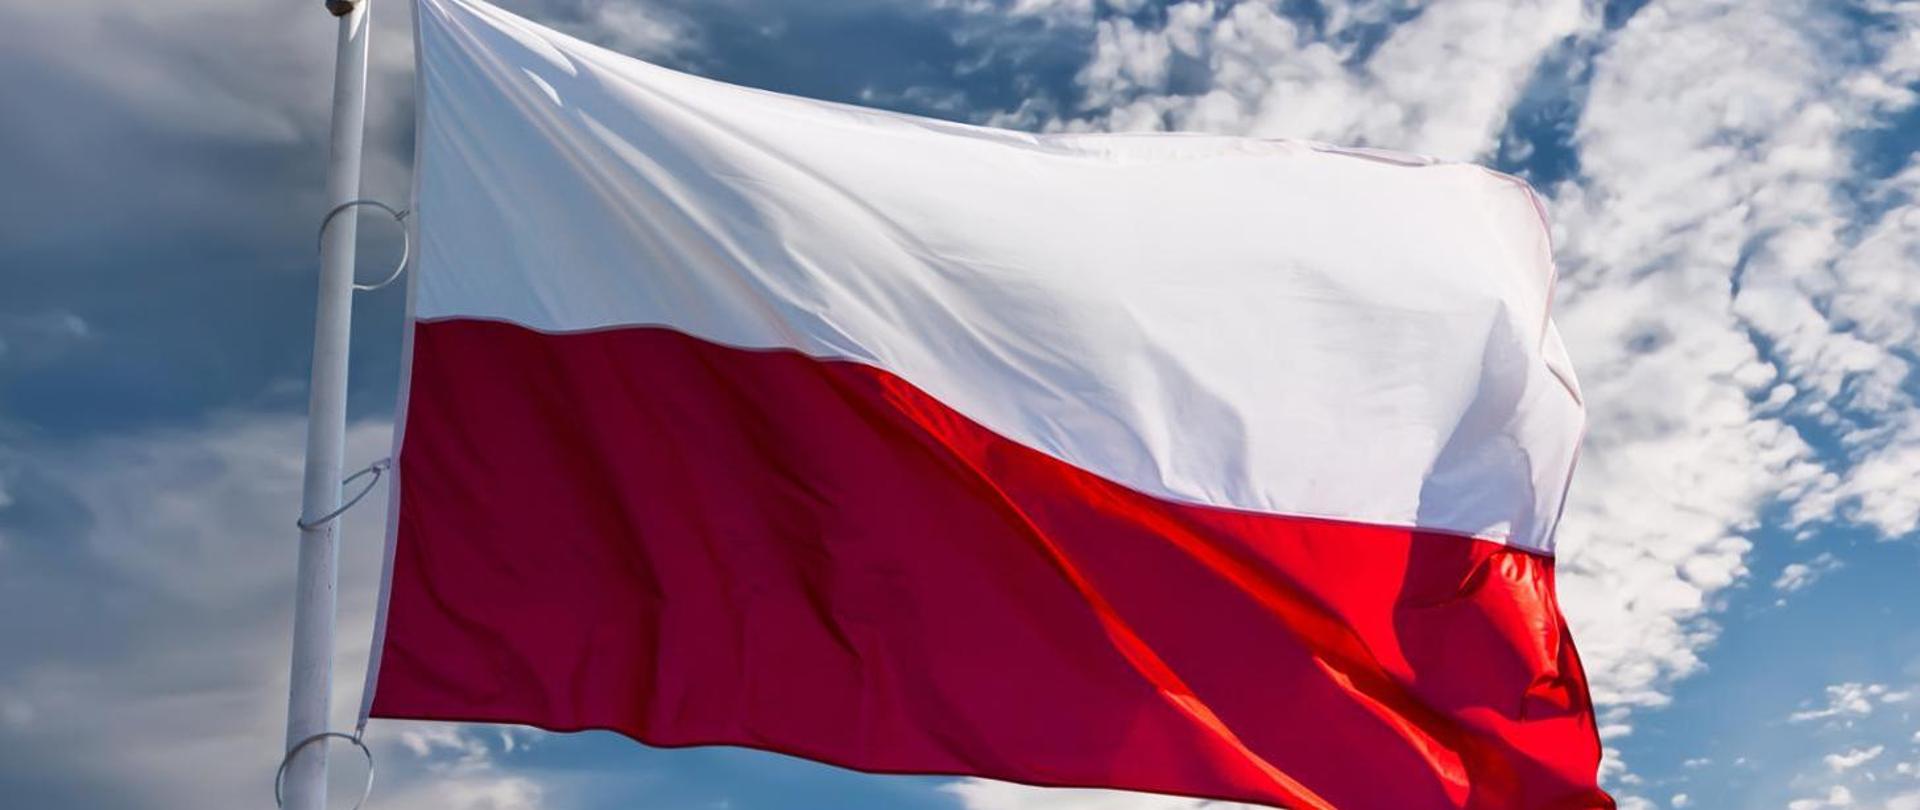 Flaga Państwowa Rzeczypospolitej Polskiej na tle nieba.